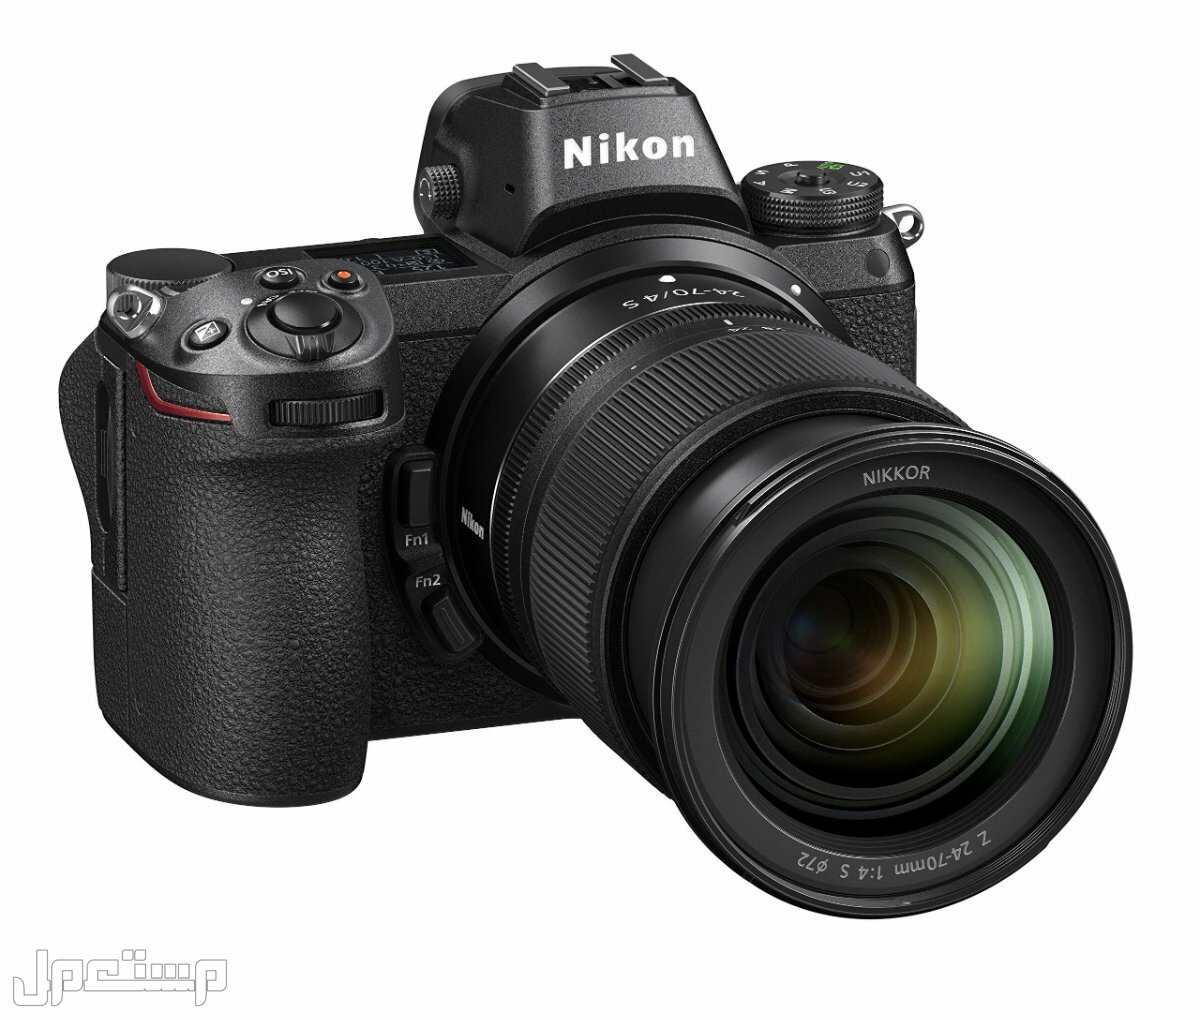 مواصفات ومميزات وأسعار أفضل أنواع كاميرات نيكون للمحترفين في عمان كاميرا Nikon Z6